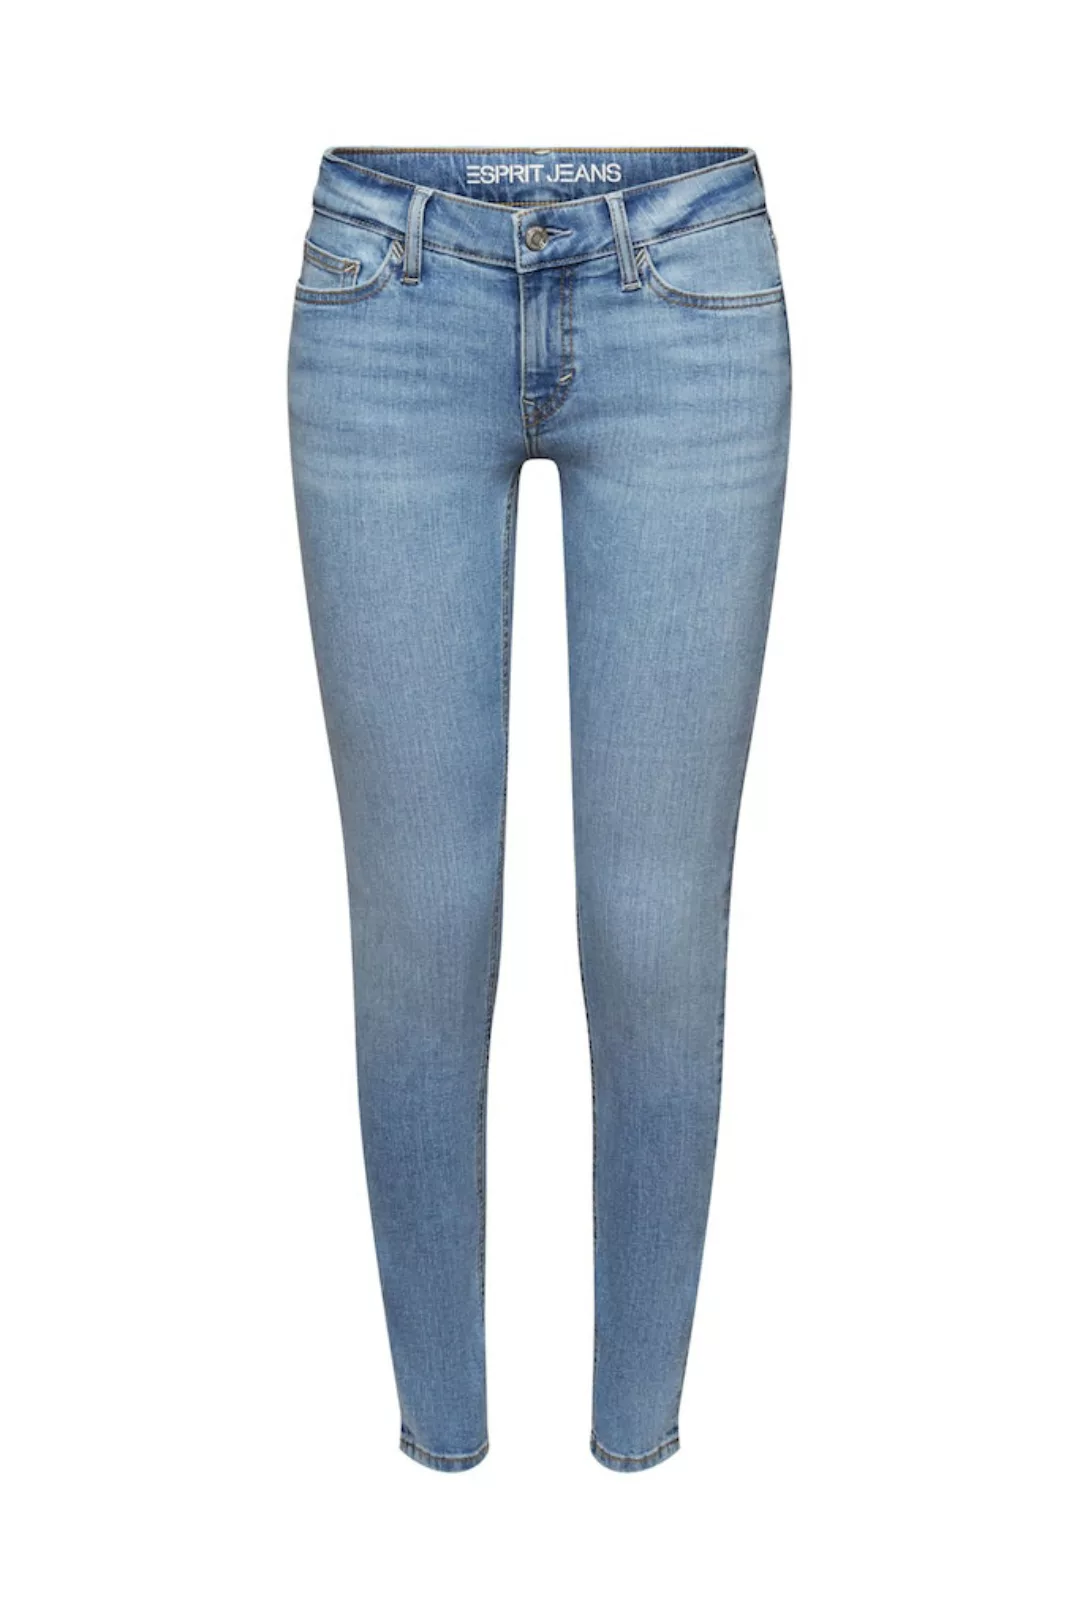 Esprit Damen Jeans 994ee1b308 günstig online kaufen